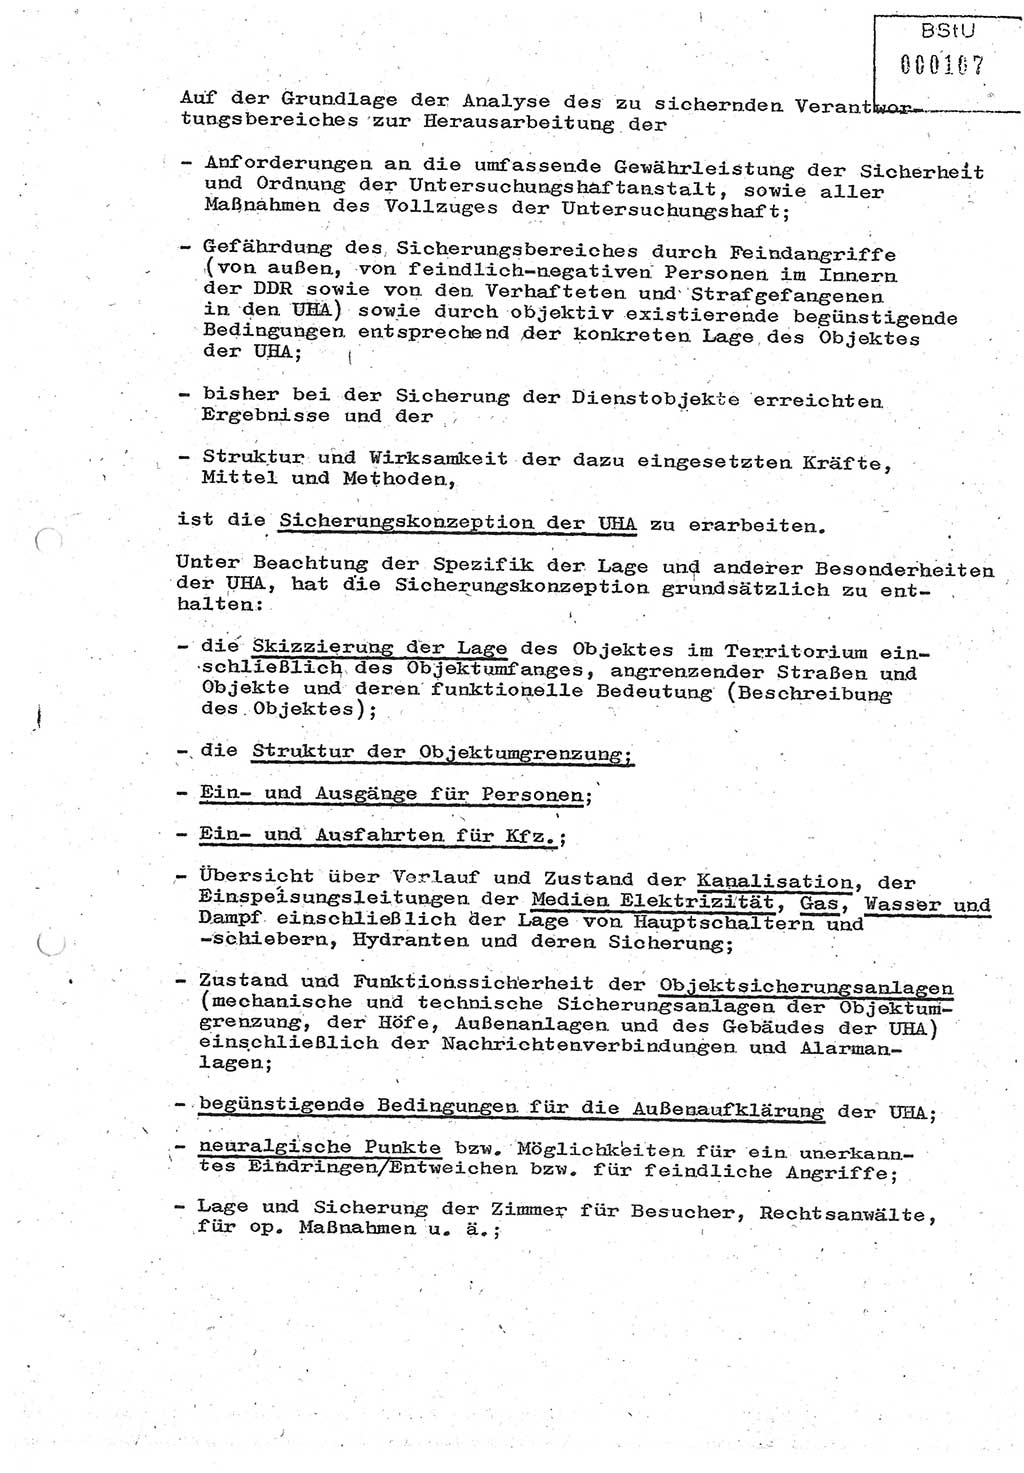 Diplomarbeit (Entwurf) Oberleutnant Peter Parke (Abt. ⅩⅣ), Ministerium für Staatssicherheit (MfS) [Deutsche Demokratische Republik (DDR)], Juristische Hochschule (JHS), Geheime Verschlußsache (GVS) o001-98/86, Potsdam 1986, Seite 107 (Dipl.-Arb. MfS DDR JHS GVS o001-98/86 1986, S. 107)